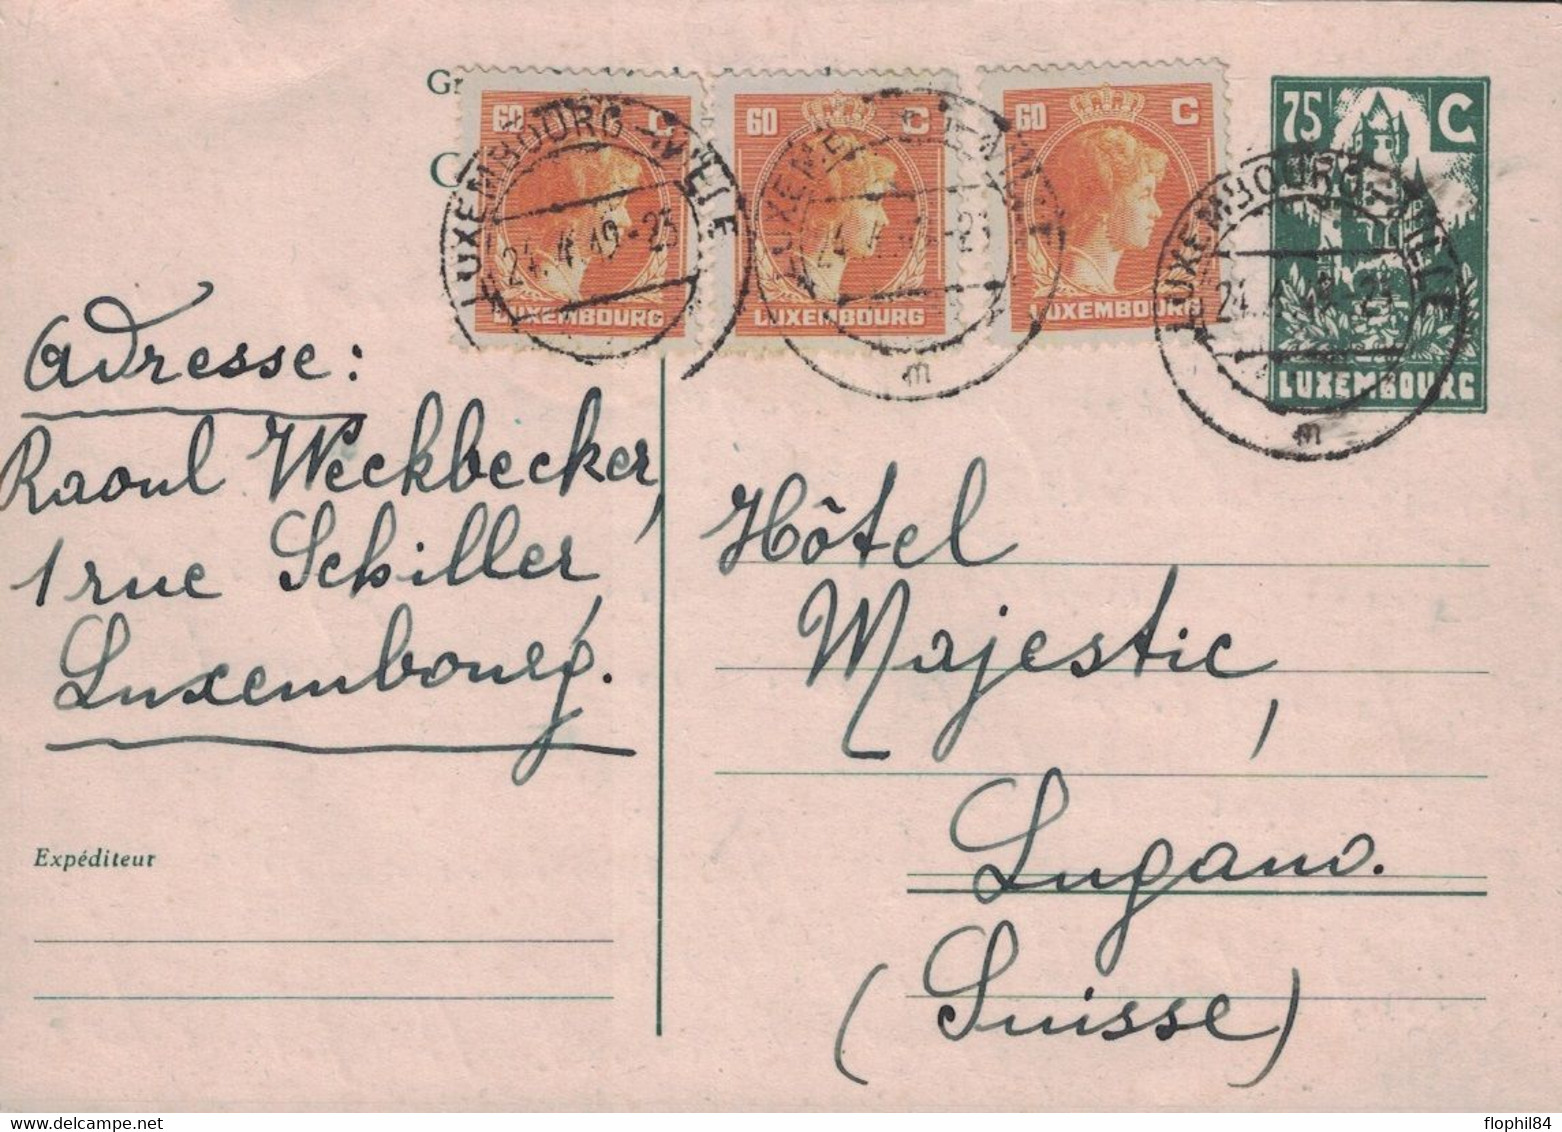 LUXEMBOURG - ENTIER POSTAL POUR LA SUISSE LE 24-4-1949 - AVEC COMPLEMENT D'AFFRANCHISSEMENT. - Stamped Stationery